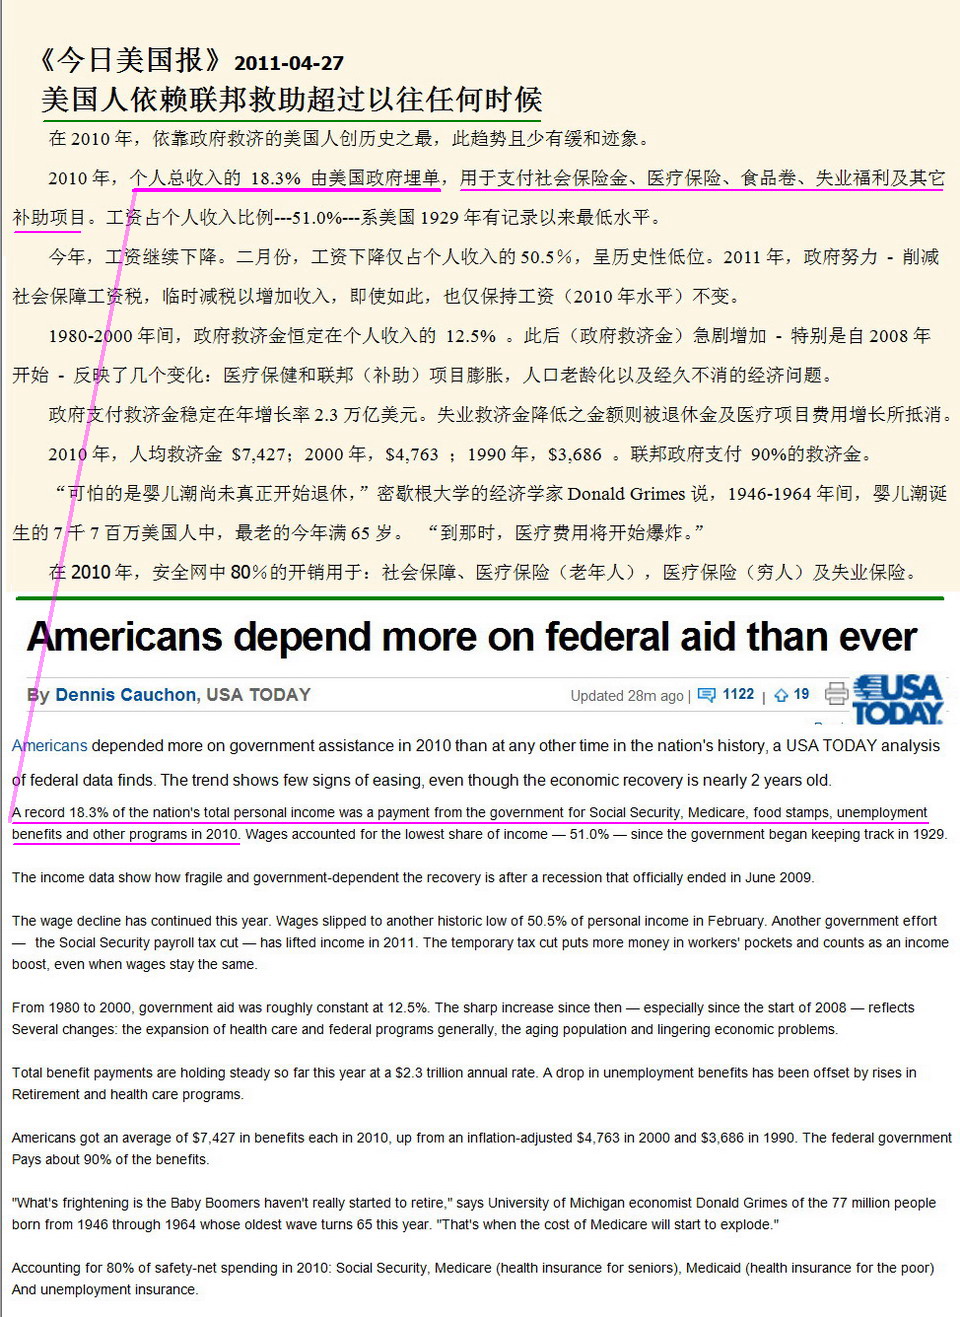 黄卫东:美国按劳分配 中国按资分配